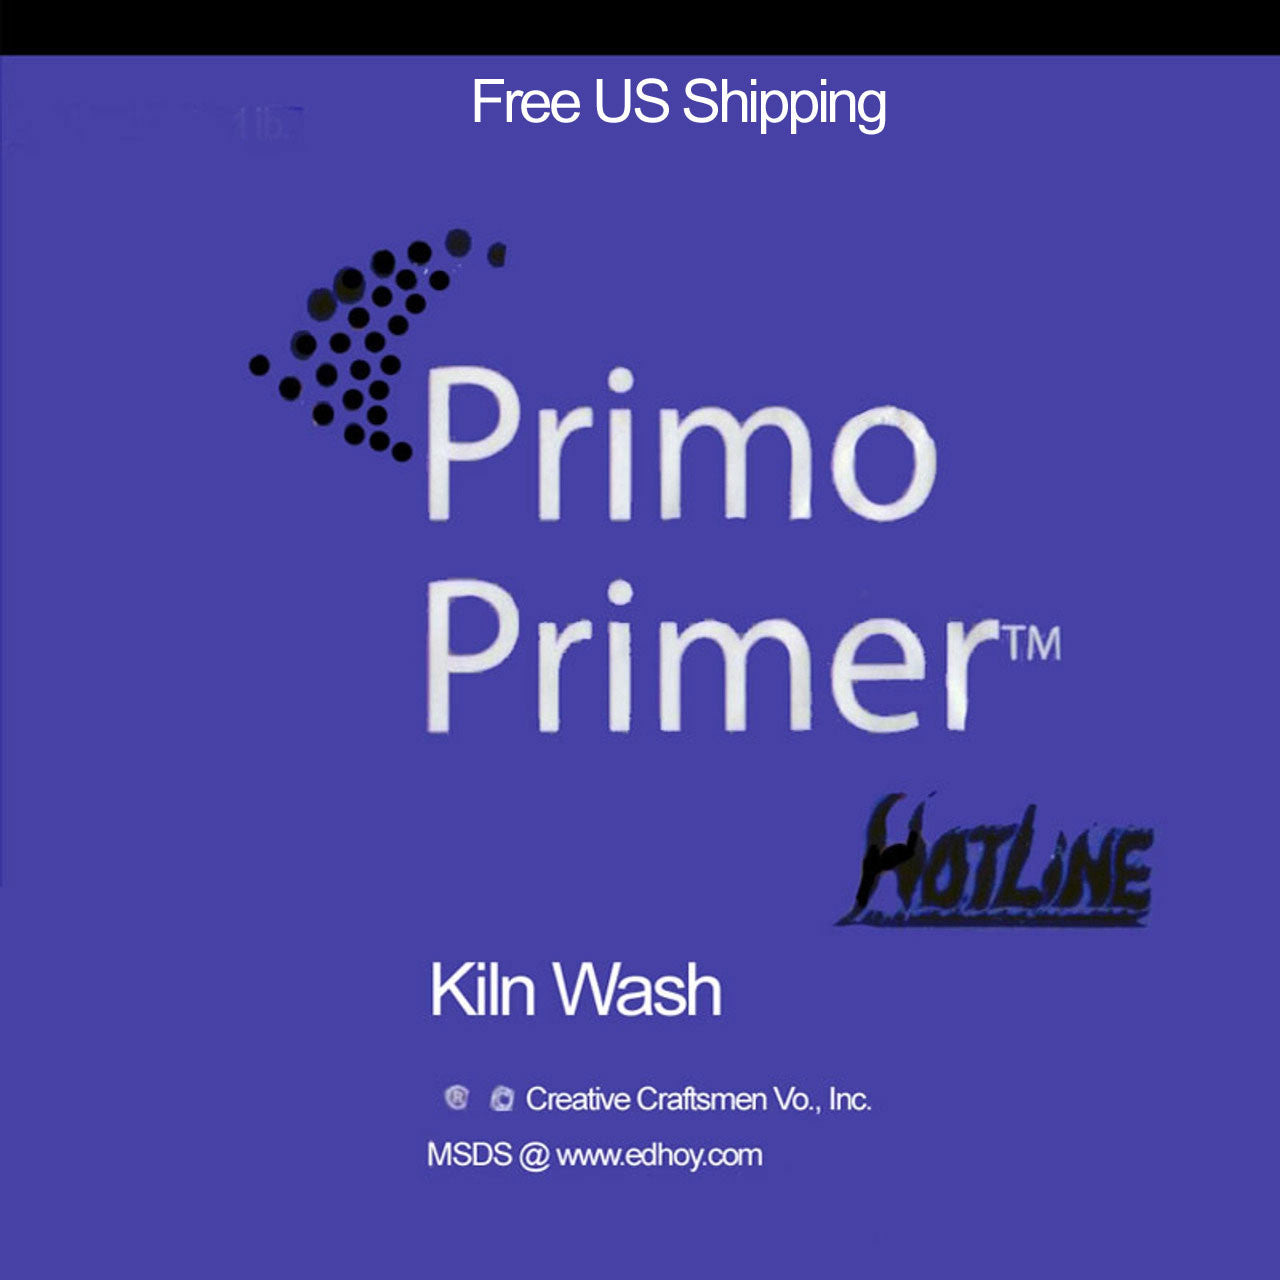 Primo Primer Mold & Shelf Primer Hotline Glass Fusing Supplies 1.5 (41515-E)